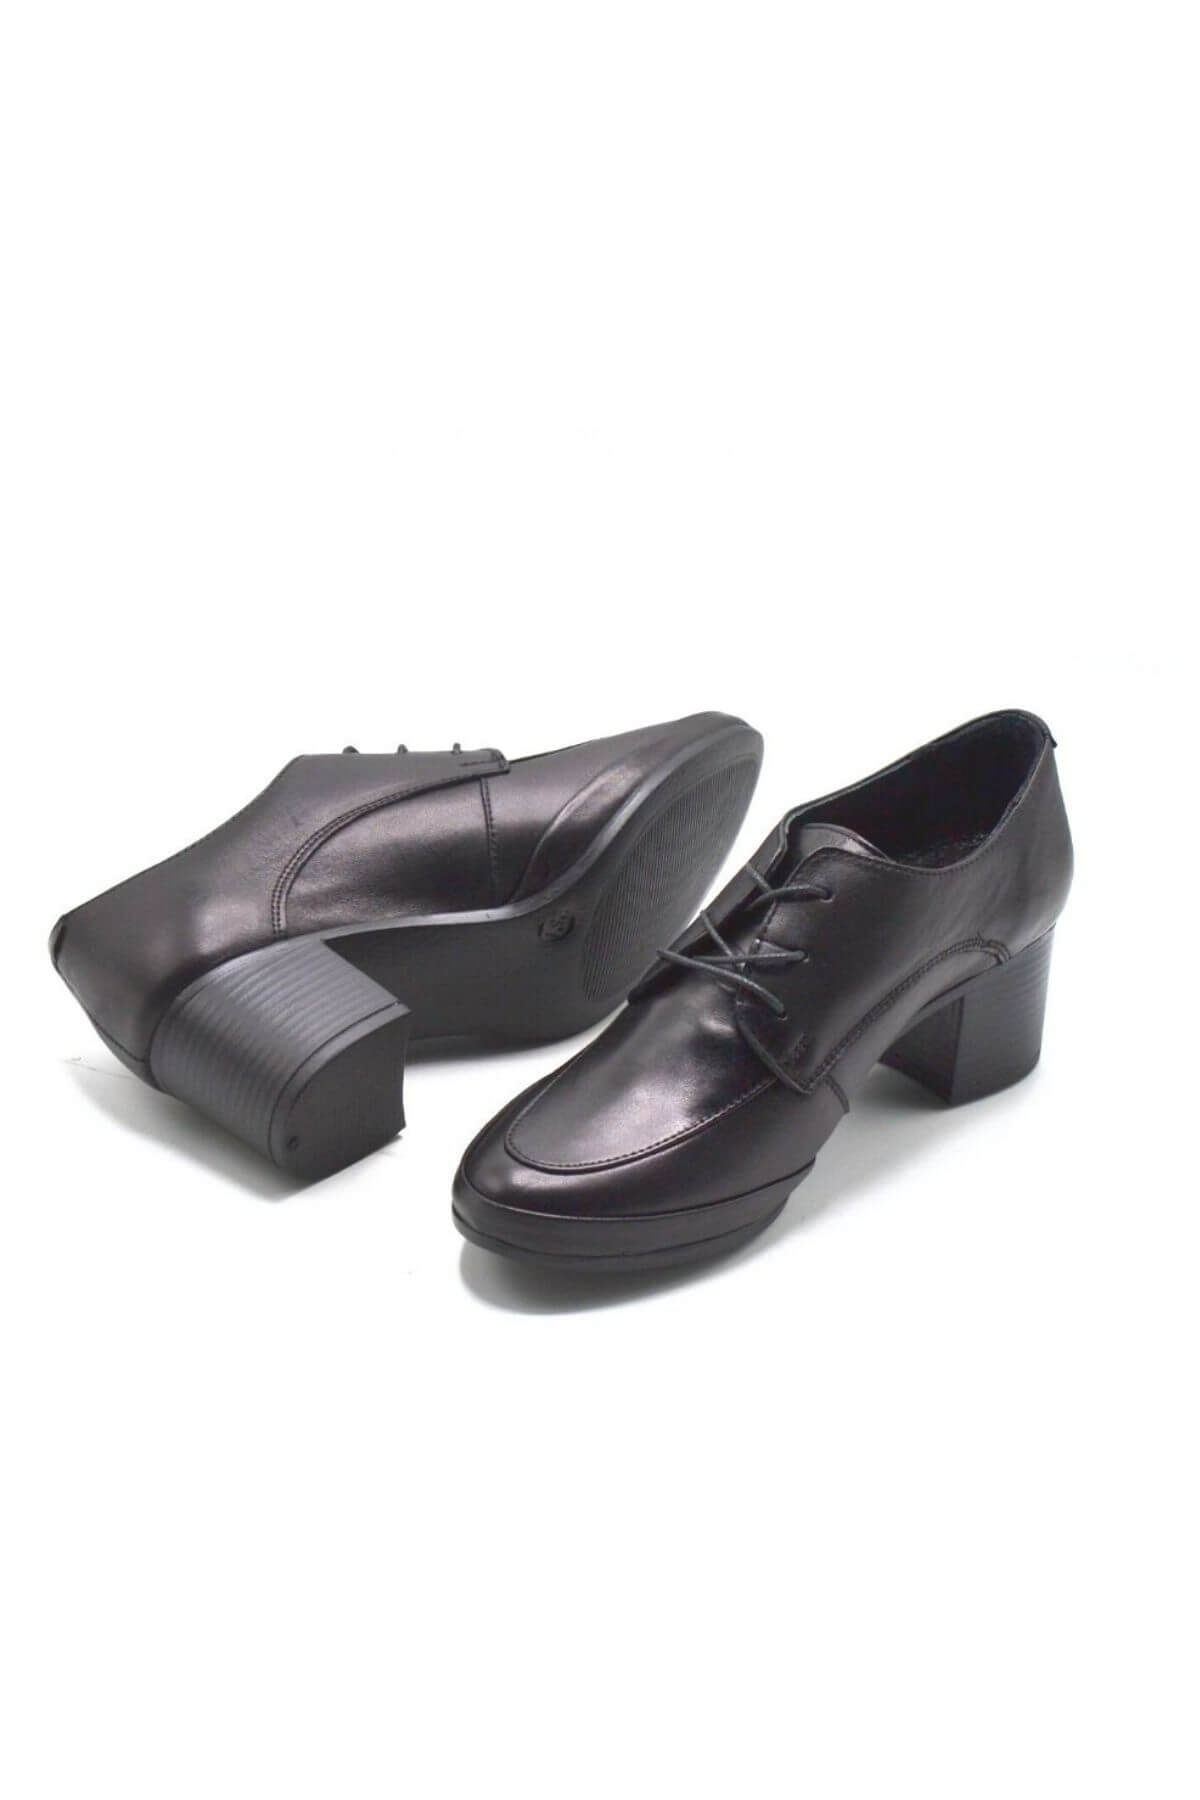 Kadın Topuklu Deri Ayakkabı Siyah 1911940K